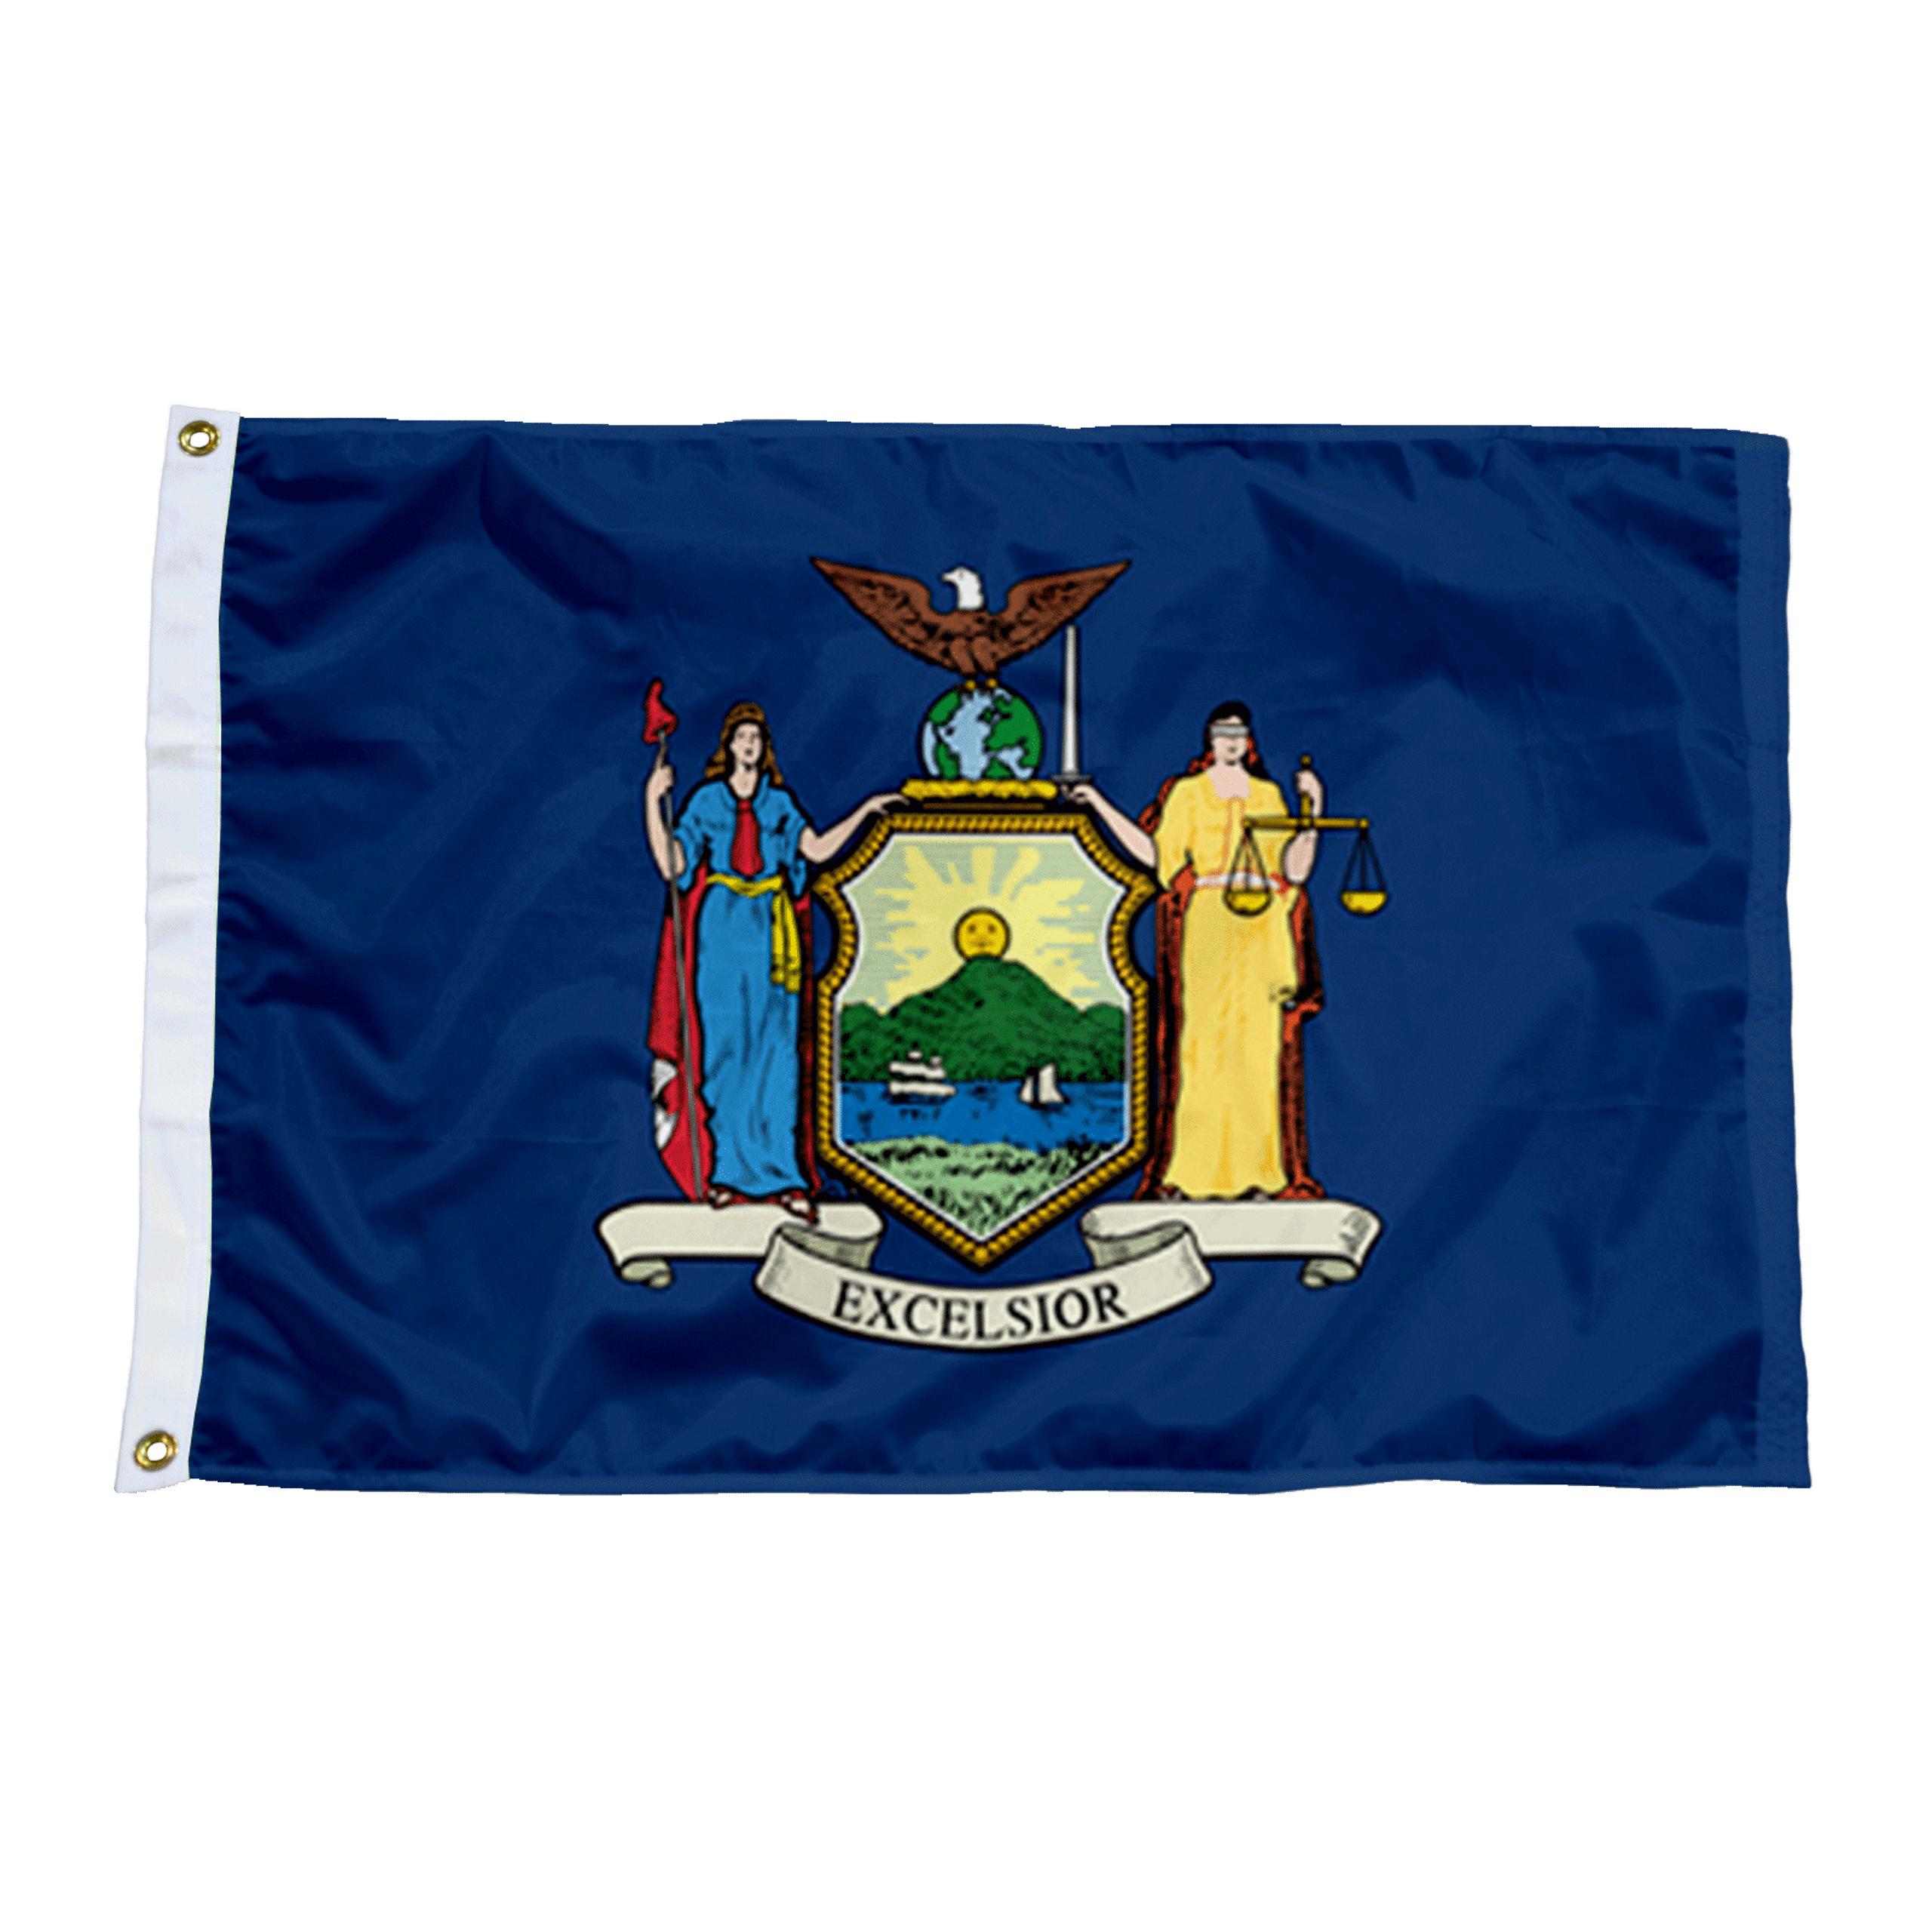 New York State Nylon Flag-Made in USA - Grand New Flag